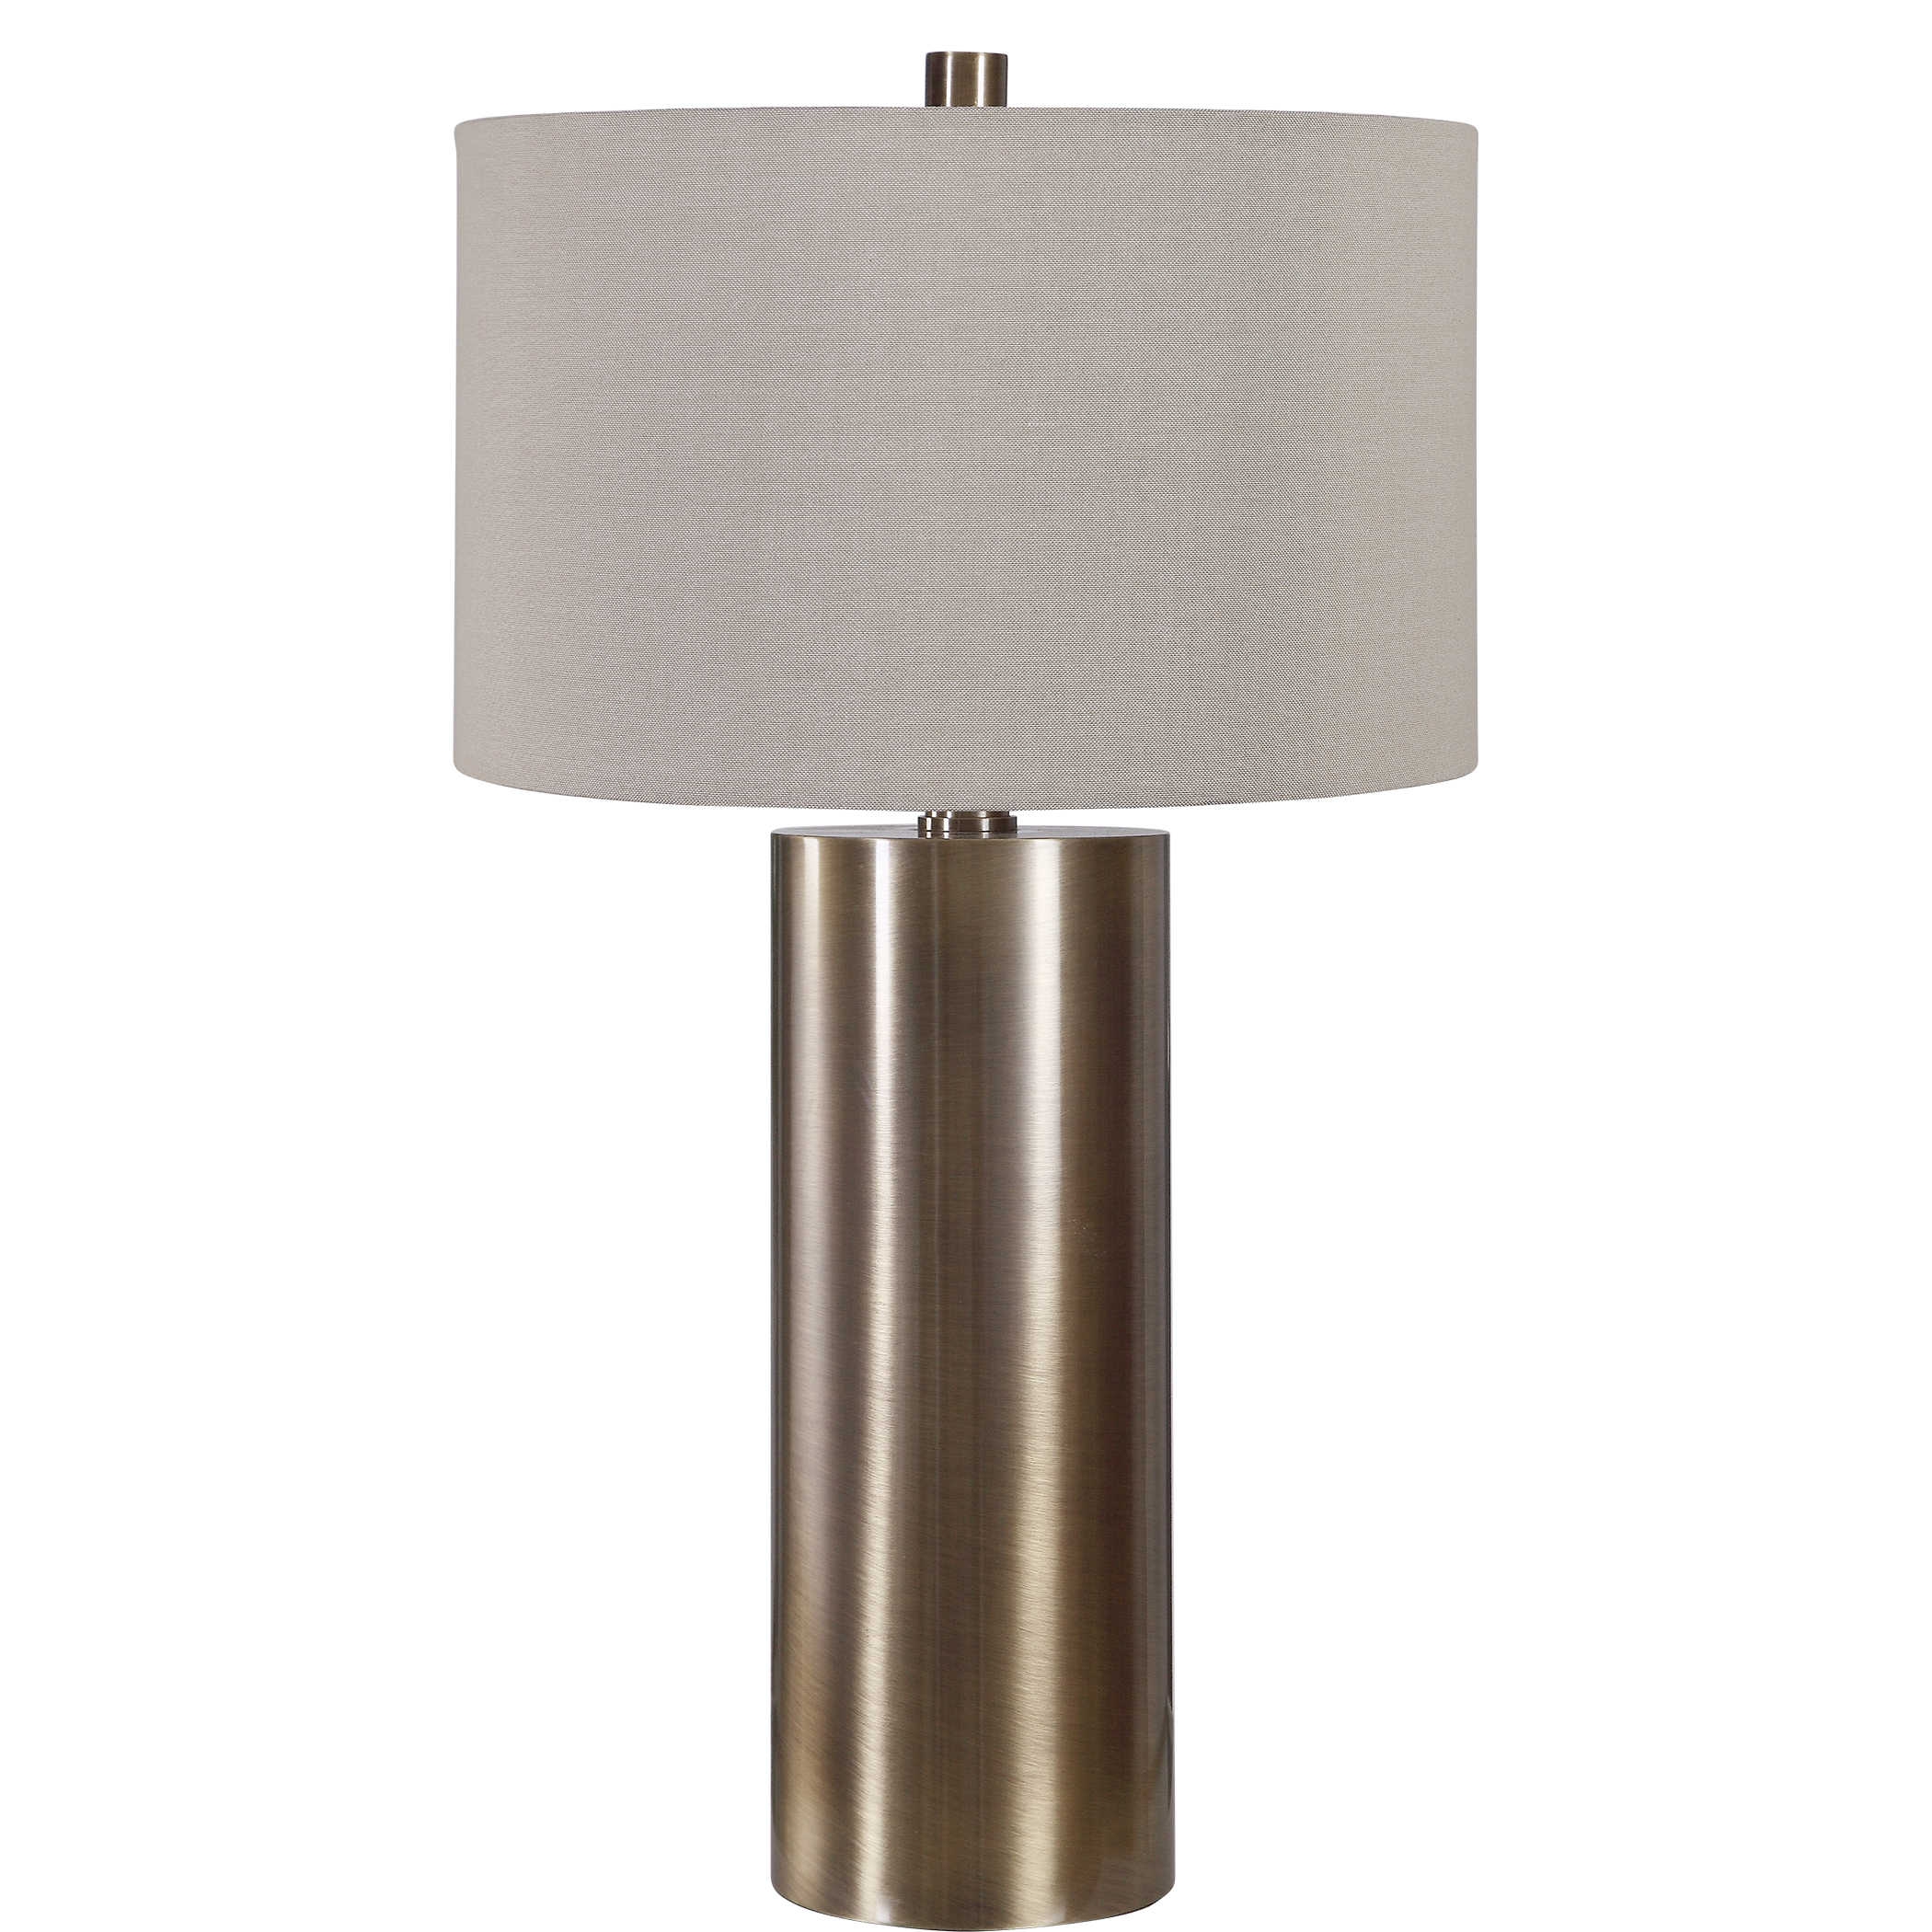 TARIA TABLE LAMP - Image 0